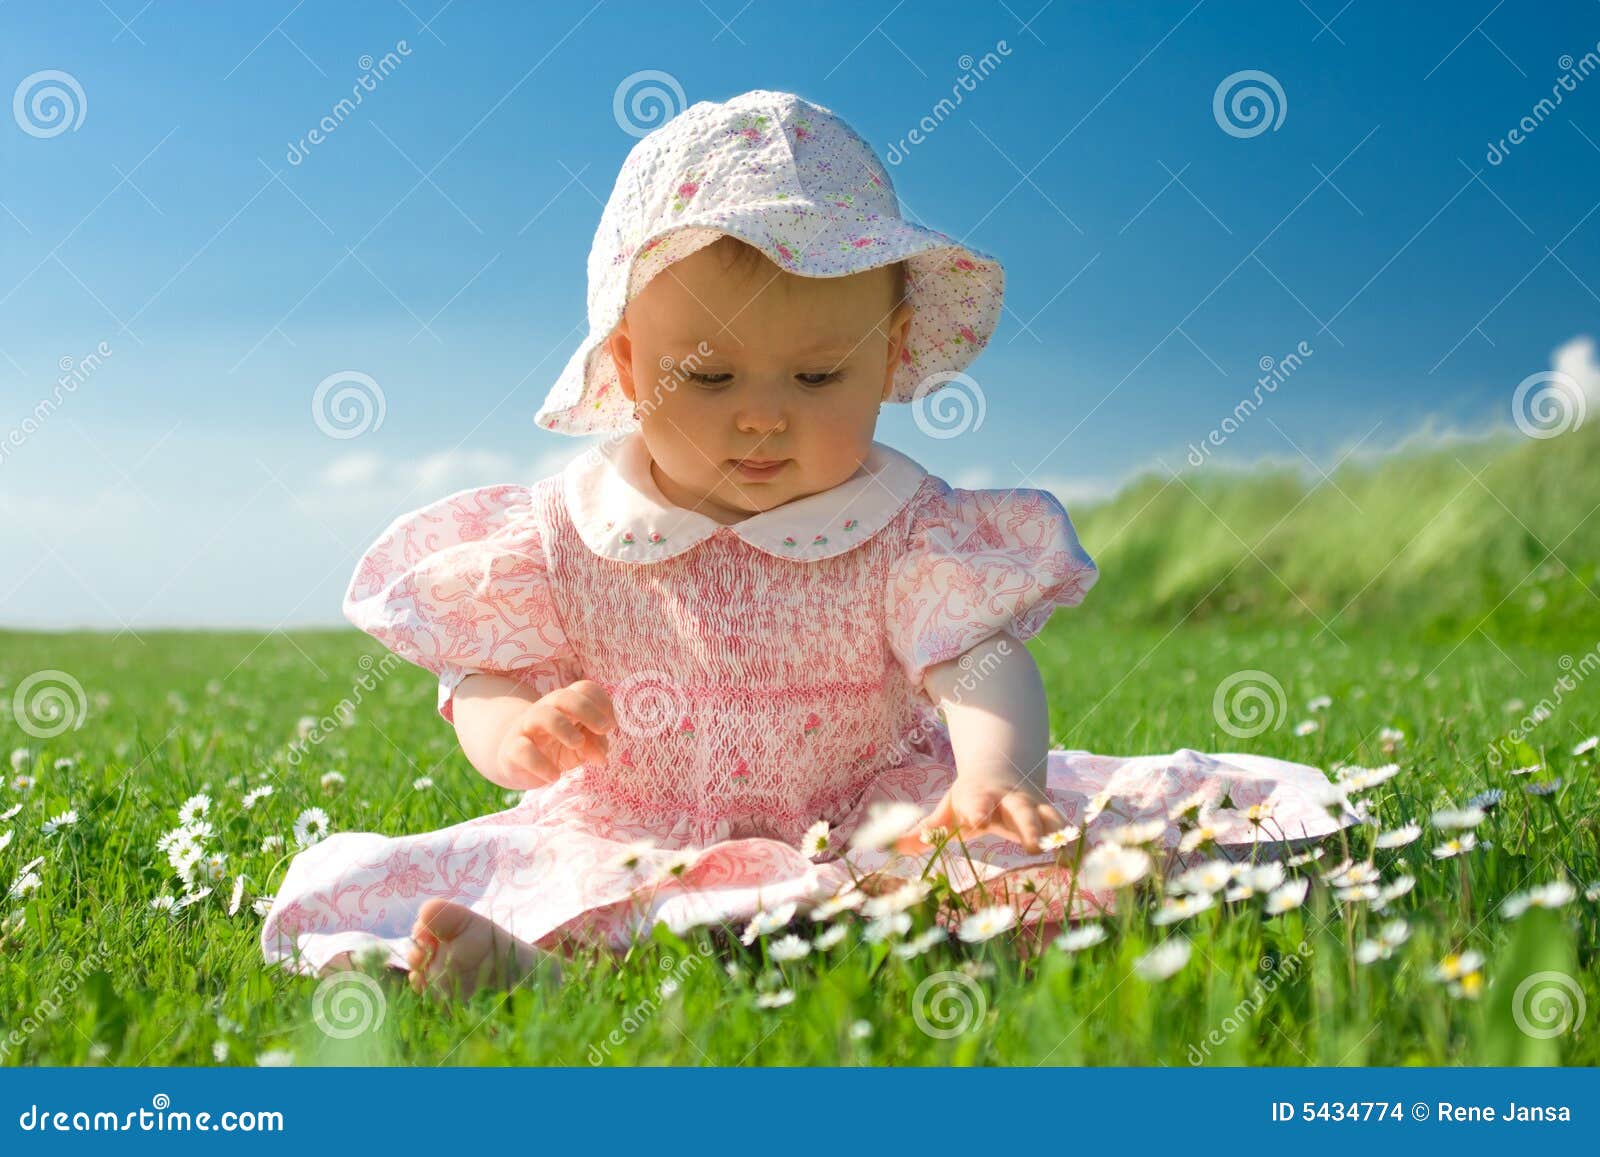 beautiful baby sat in field